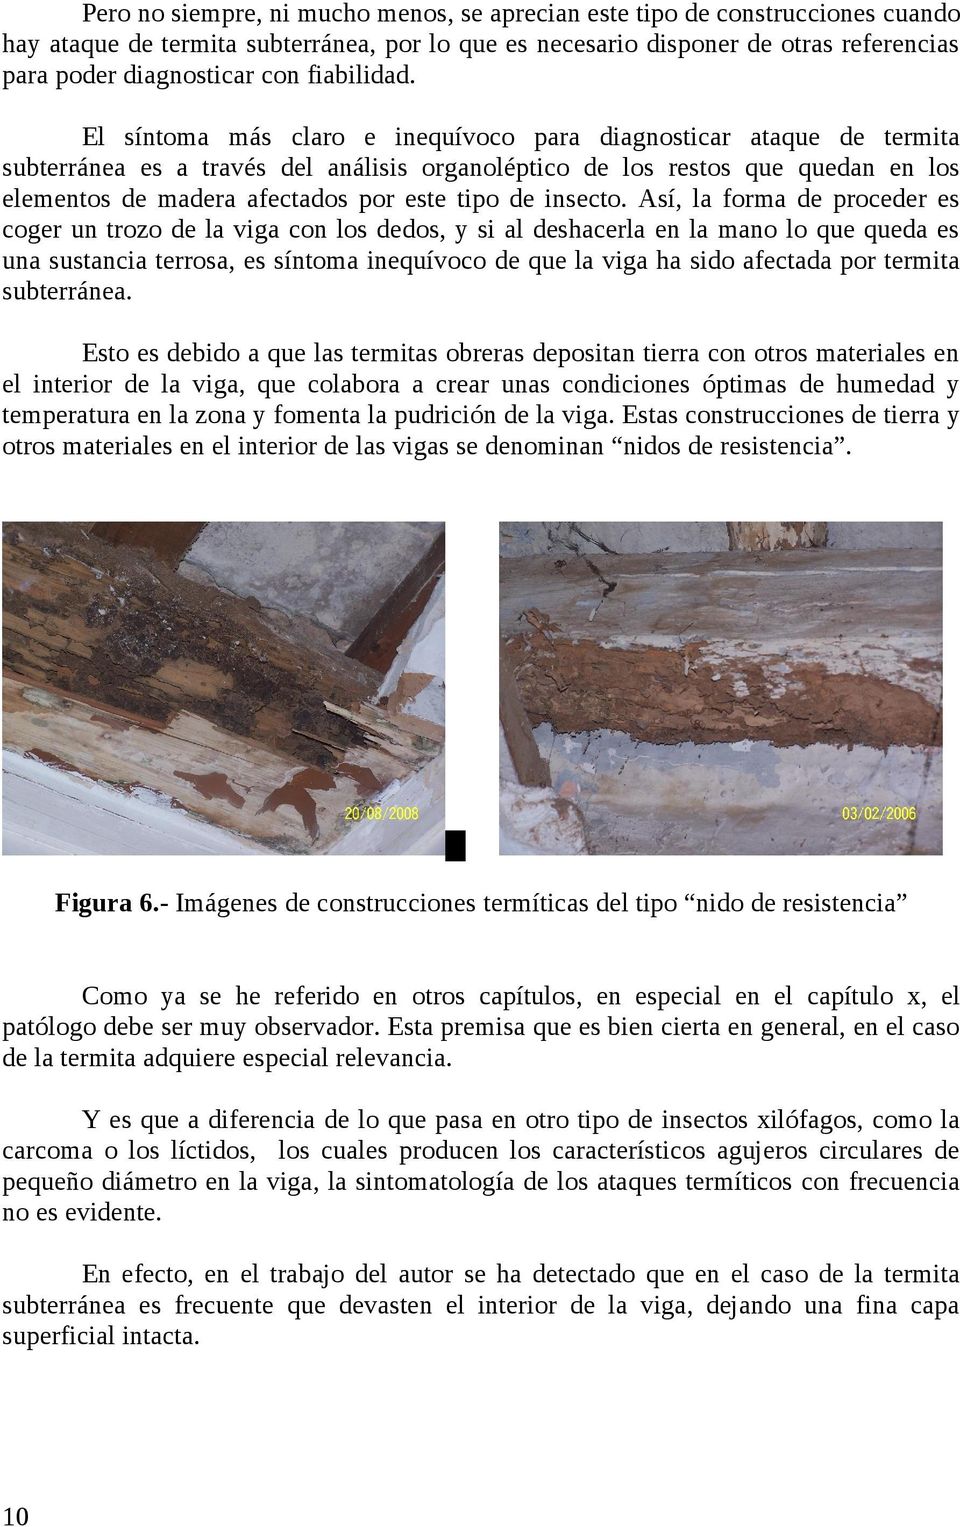 El síntoma más claro e inequívoco para diagnosticar ataque de termita subterránea es a través del análisis organoléptico de los restos que quedan en los elementos de madera afectados por este tipo de